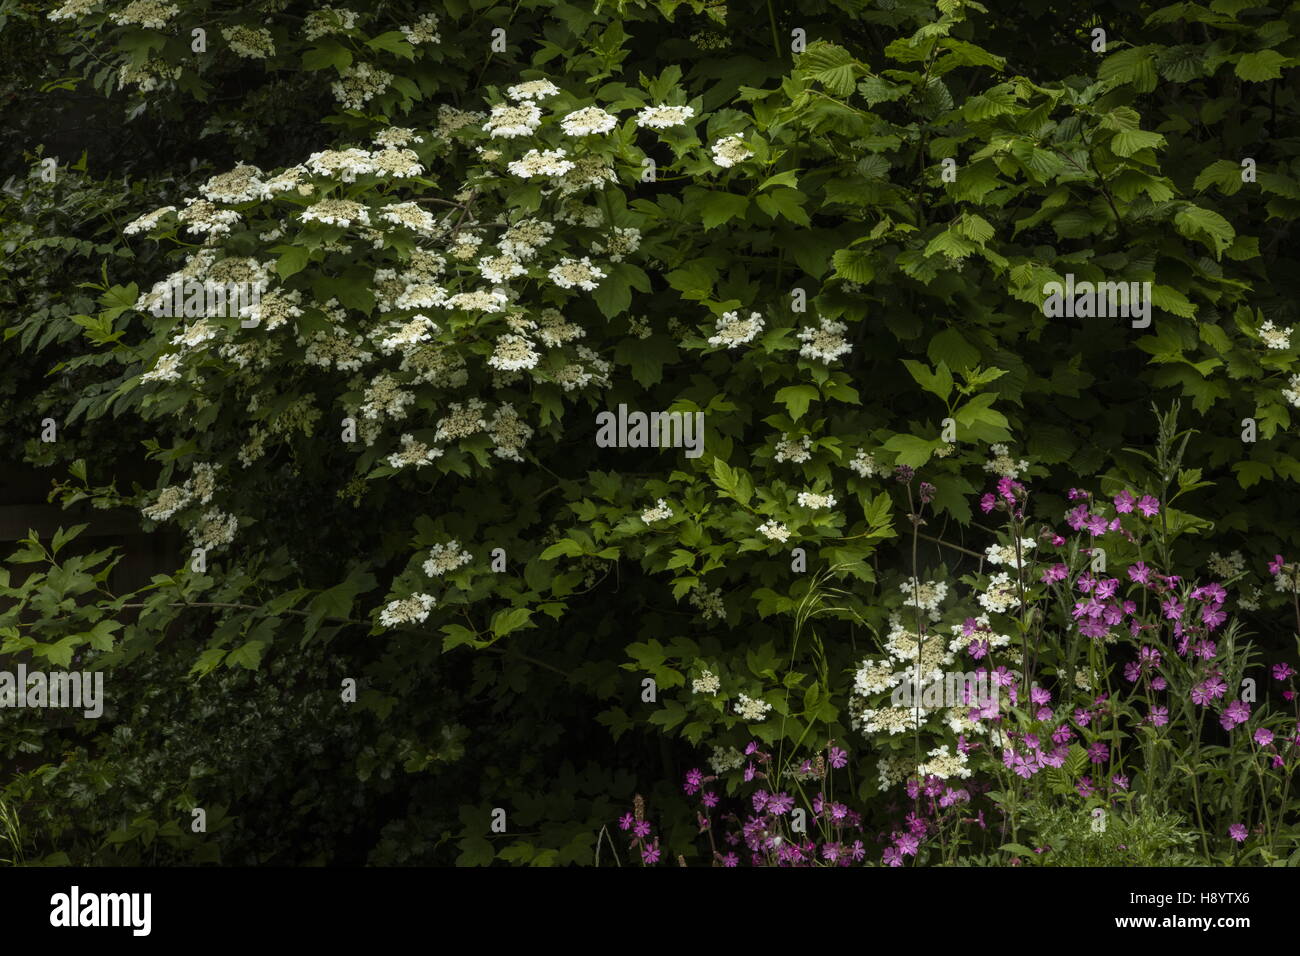 Strauch-Ecke mit Guelder Rose, rote Campion, Hazel etc. in einem Wildlife-Garten, Dorset. Stockfoto